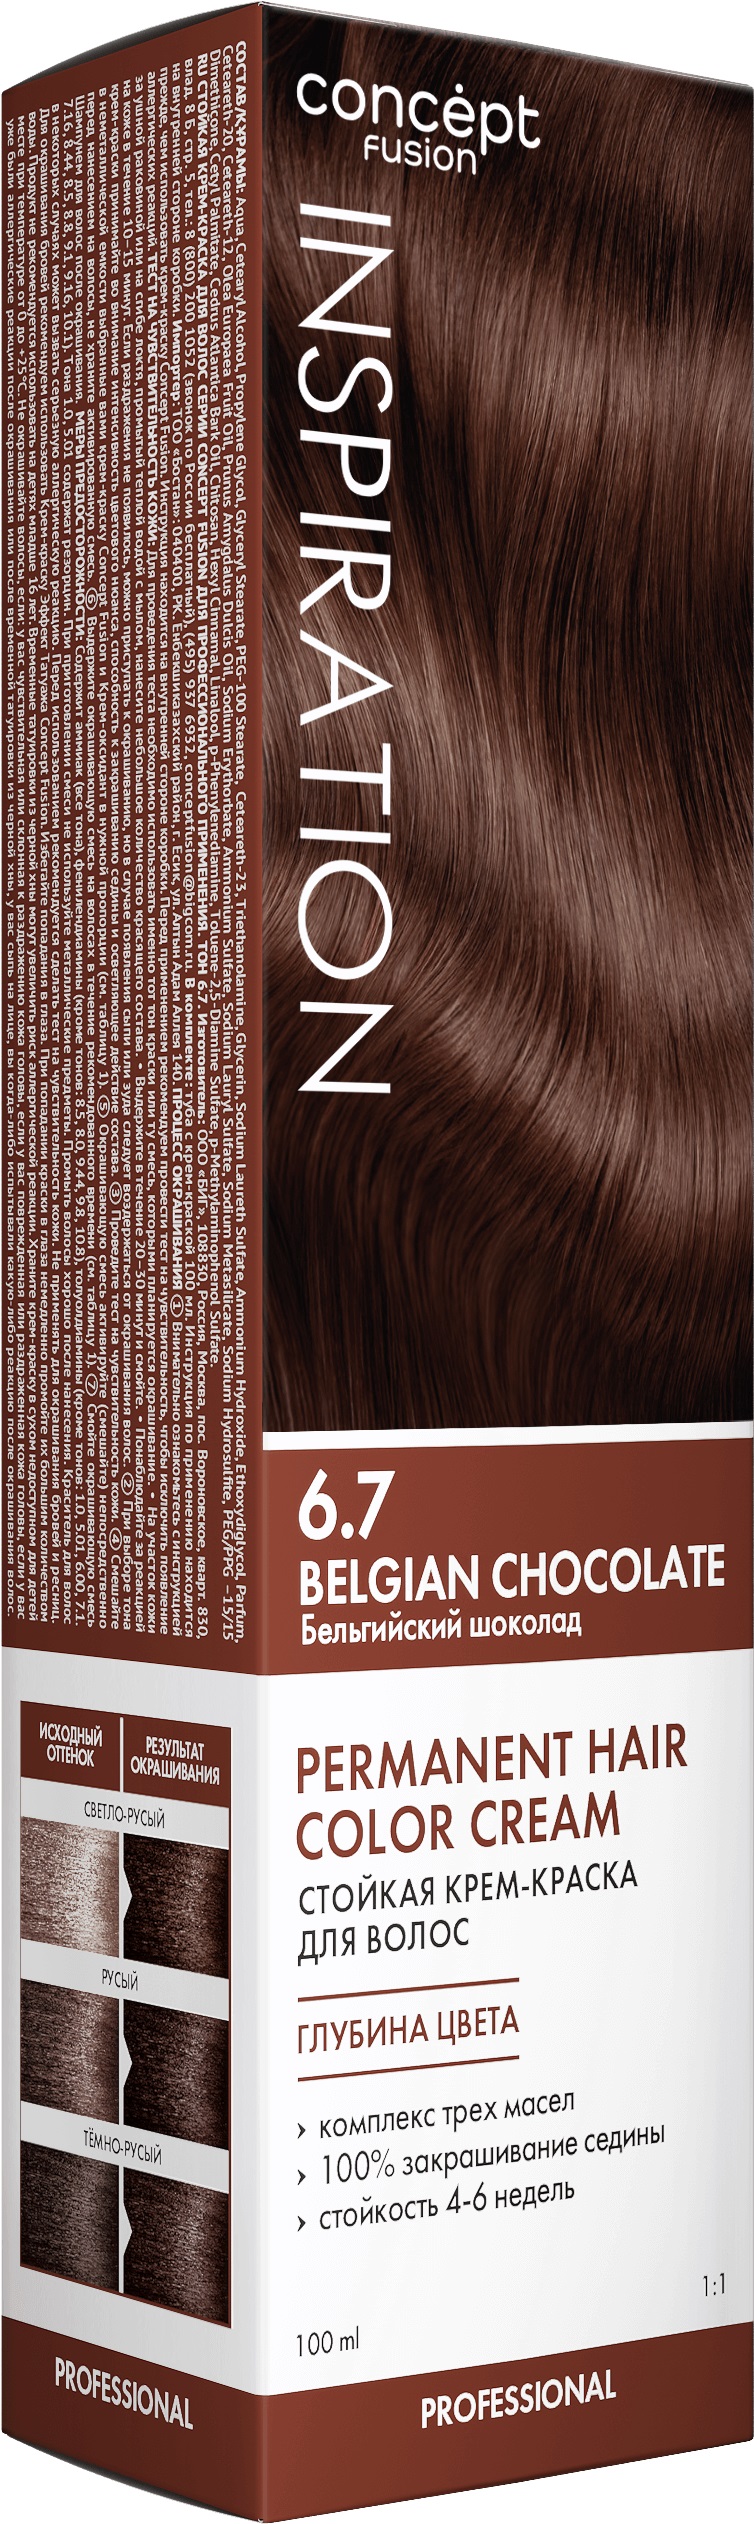 Крем-краска Concept Fusion Inspiration бельгийский шоколад, №6.7, 100 мл